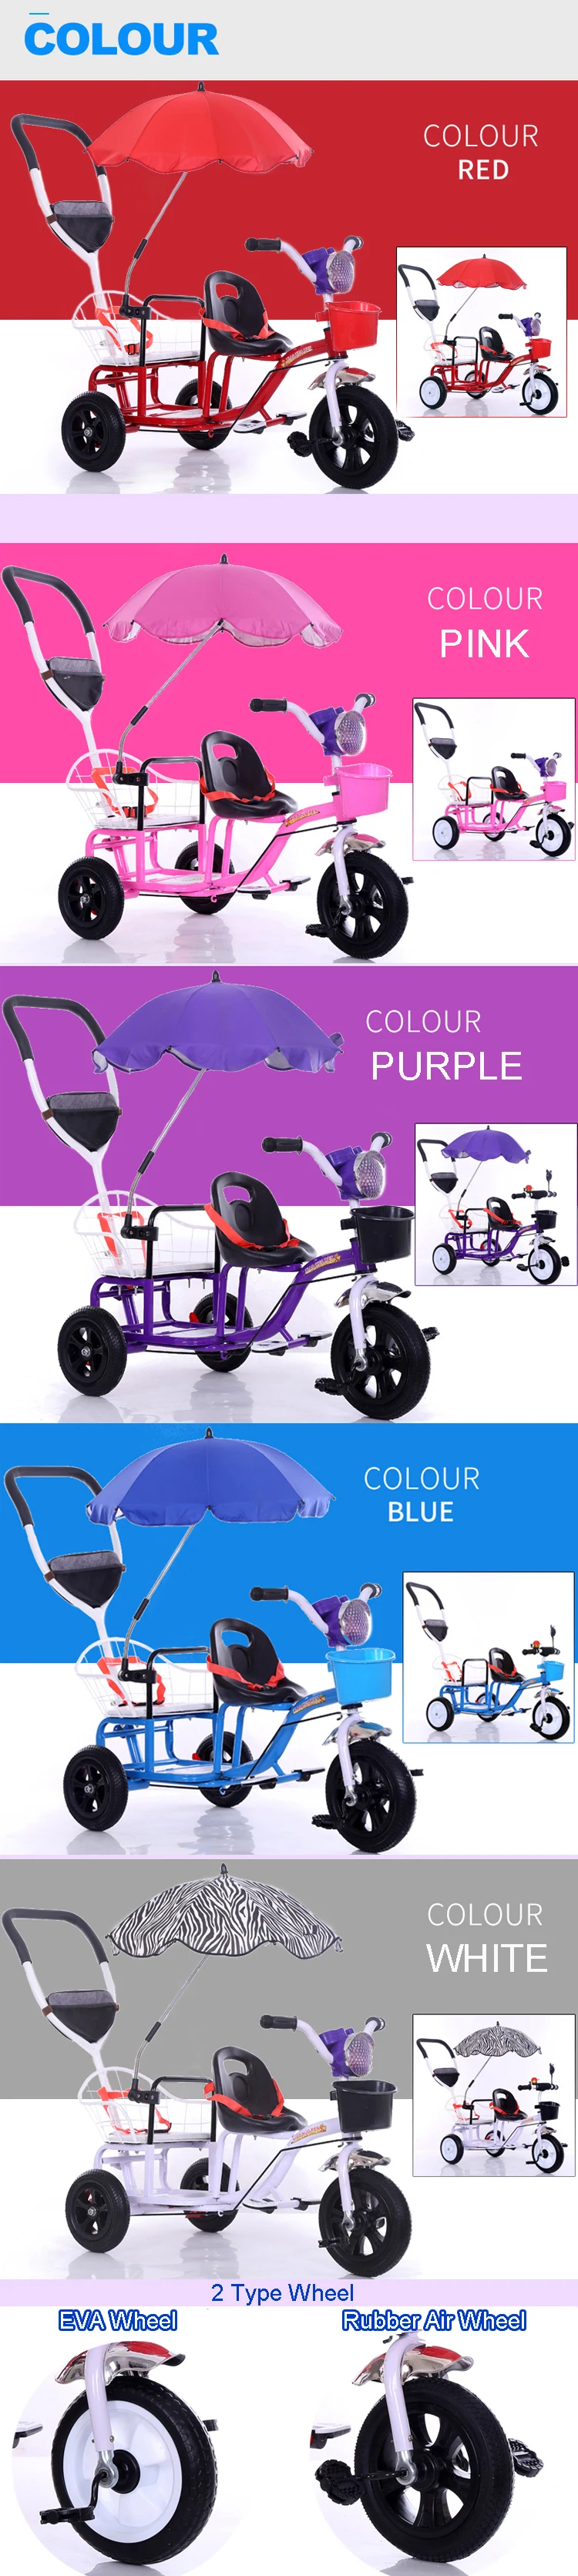 12 дюймов 2 детский трехколесный велосипед для близнецов, Двухместный трехколесный велосипед тандем трайк со складывающейся педалью и съемным подлокотником